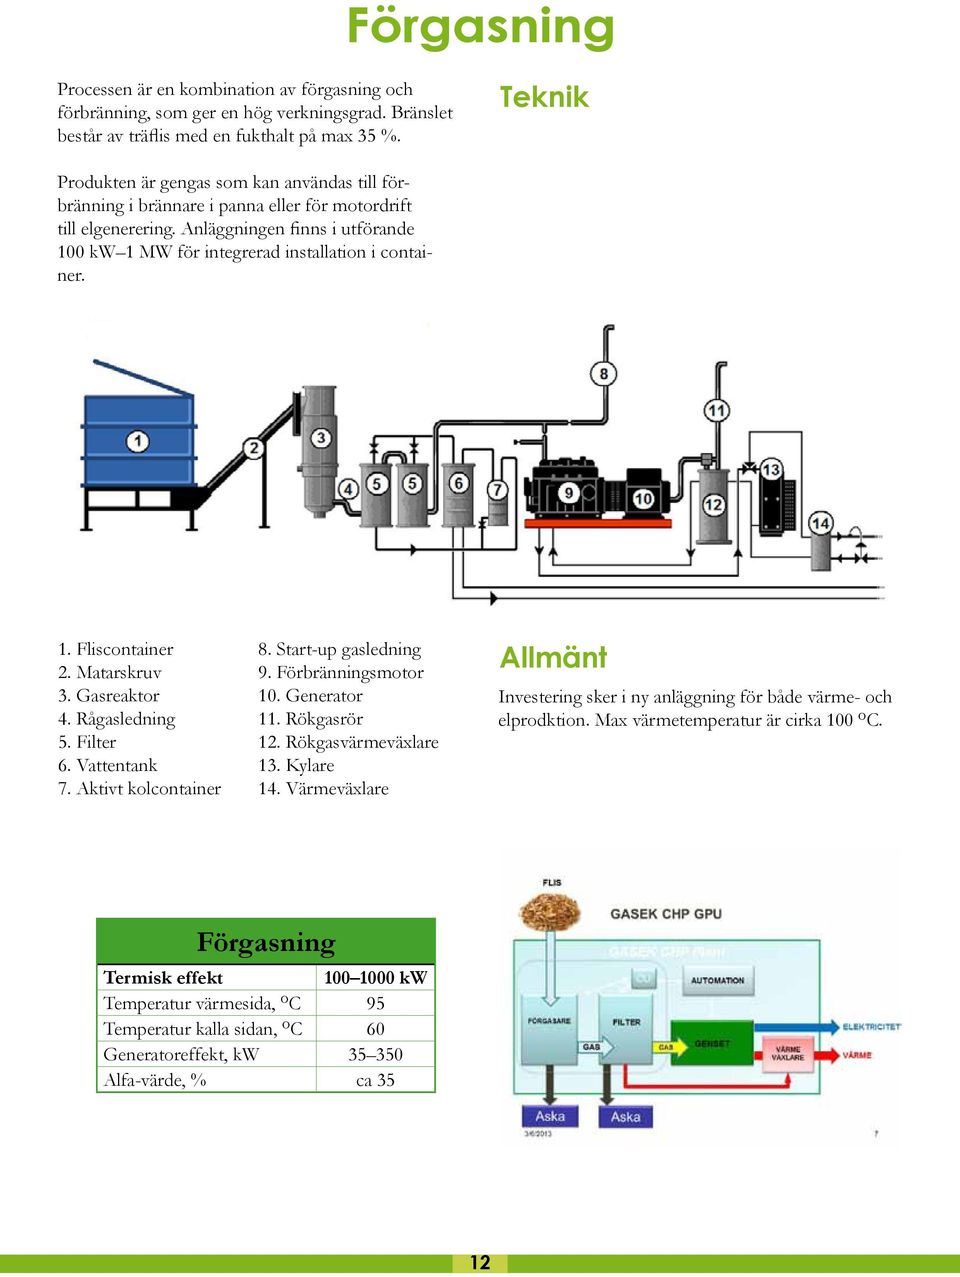 Anläggningen finns i utförande 100 kw 1 MW för integrerad installation i container. 1. Fliscontainer 2. Matarskruv 3. Gasreaktor 4. Rågasledning 5. Filter 6. Vattentank 7. Aktivt kolcontainer 8.